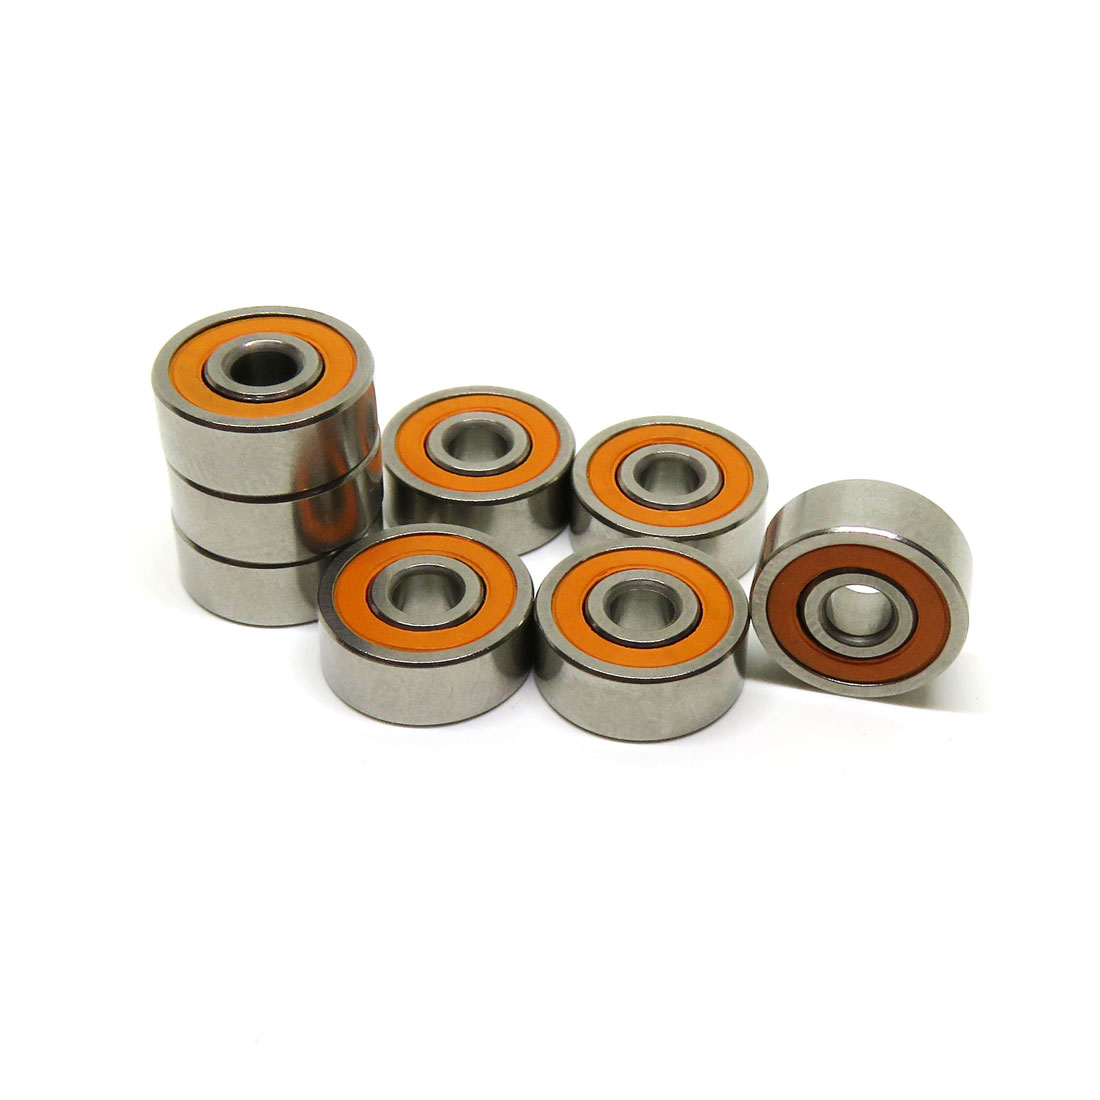 Stainless spool bearings kit hybrid ball bearings abec 7 ceramic bearings for reels.jpg